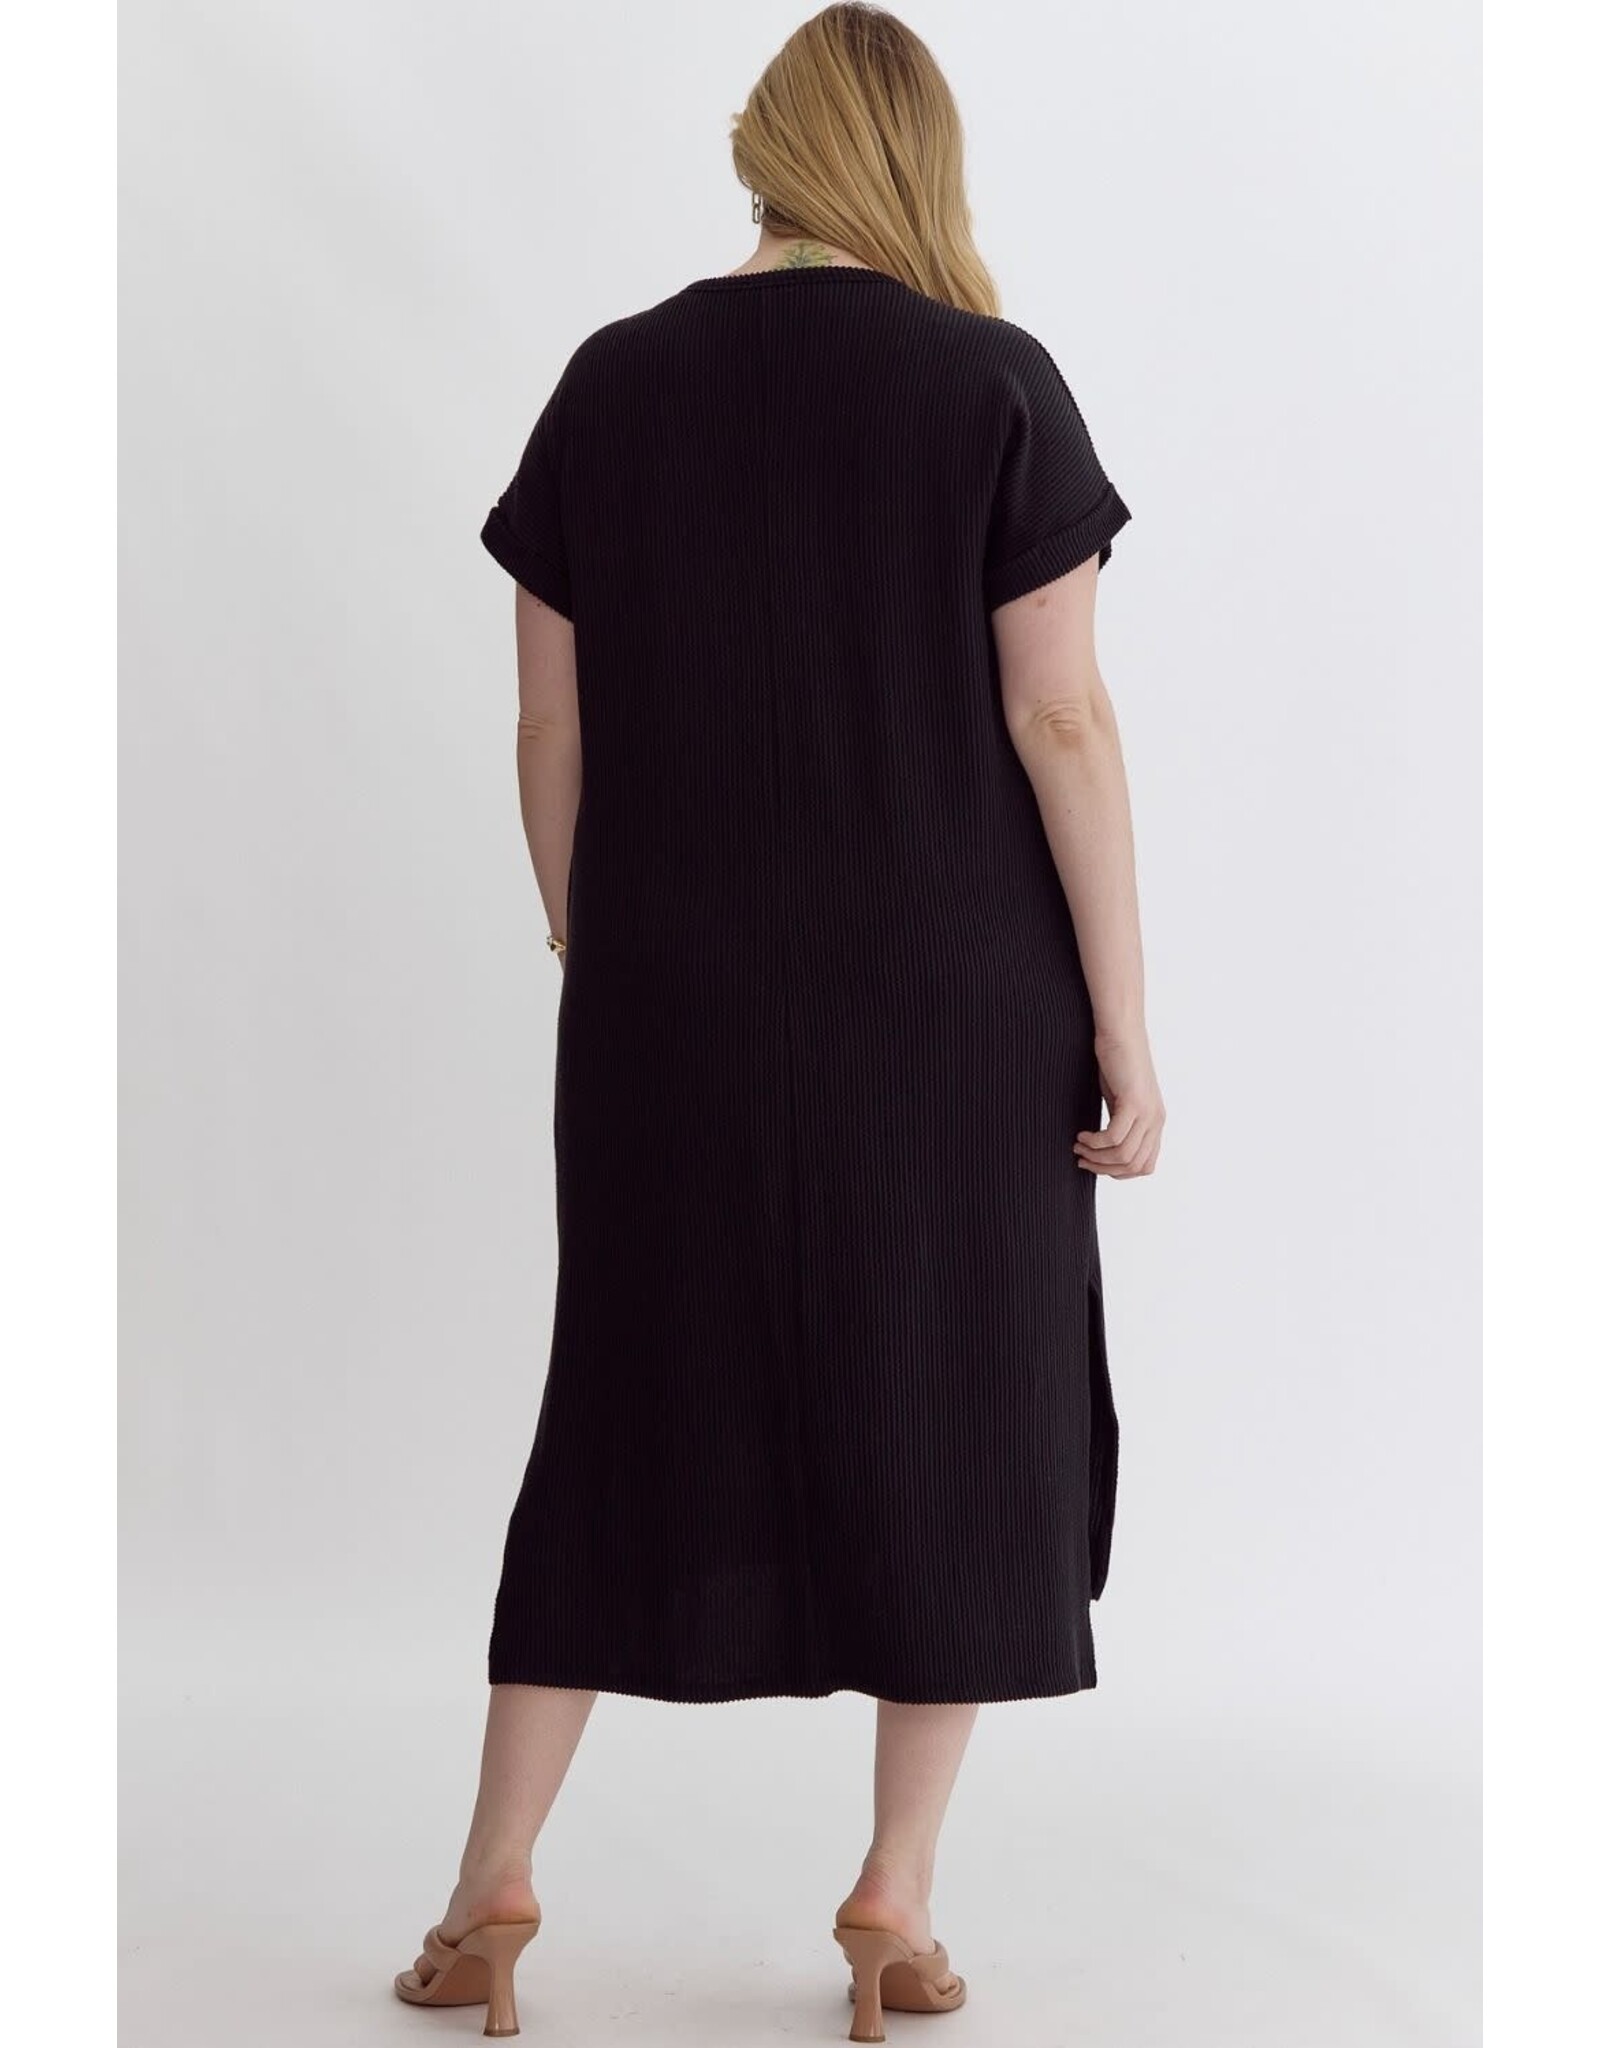 Black Textured Knit Midi Dress